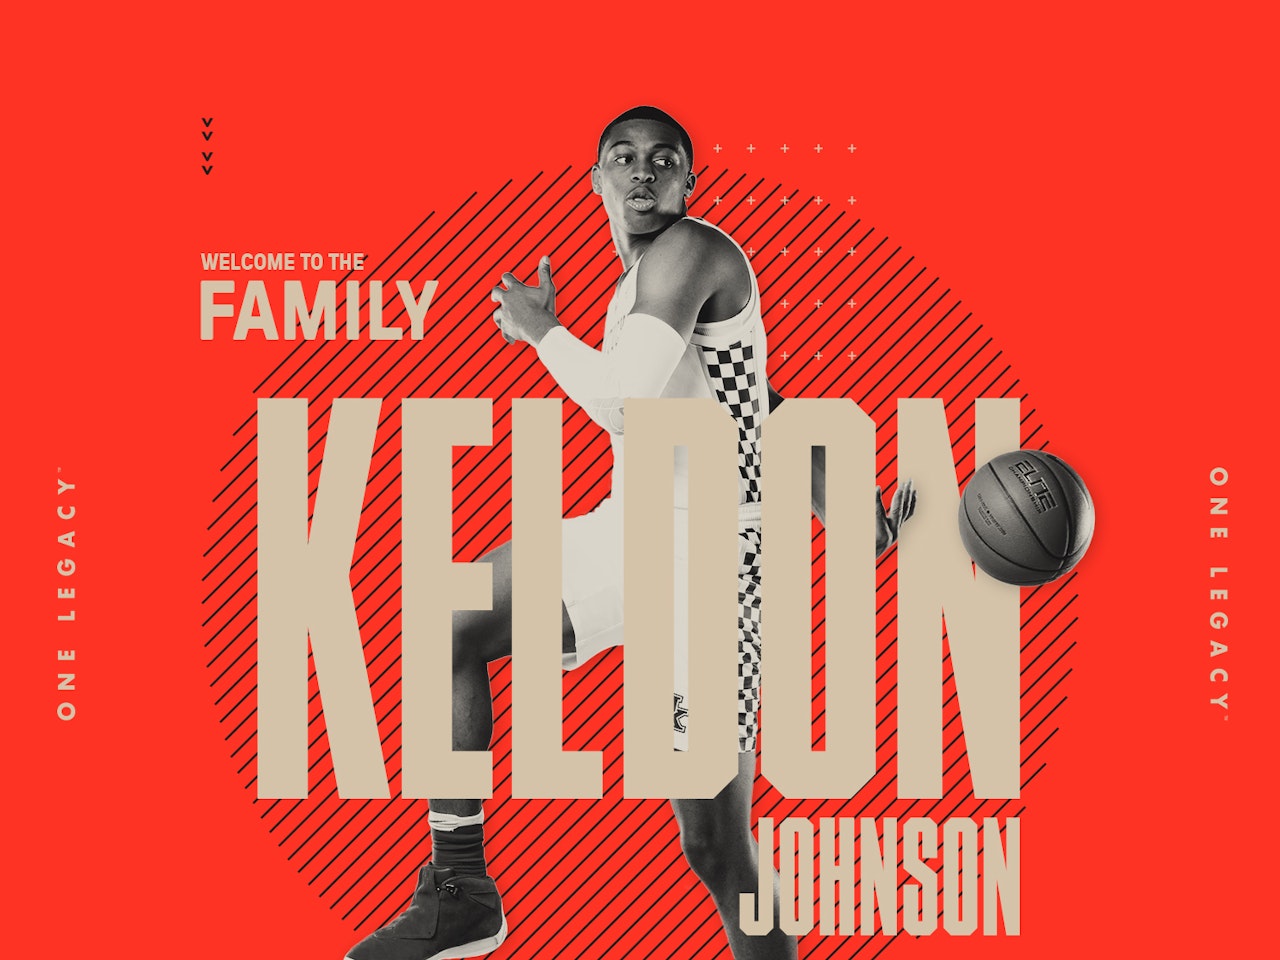 KELDON JOHSON WELCOME